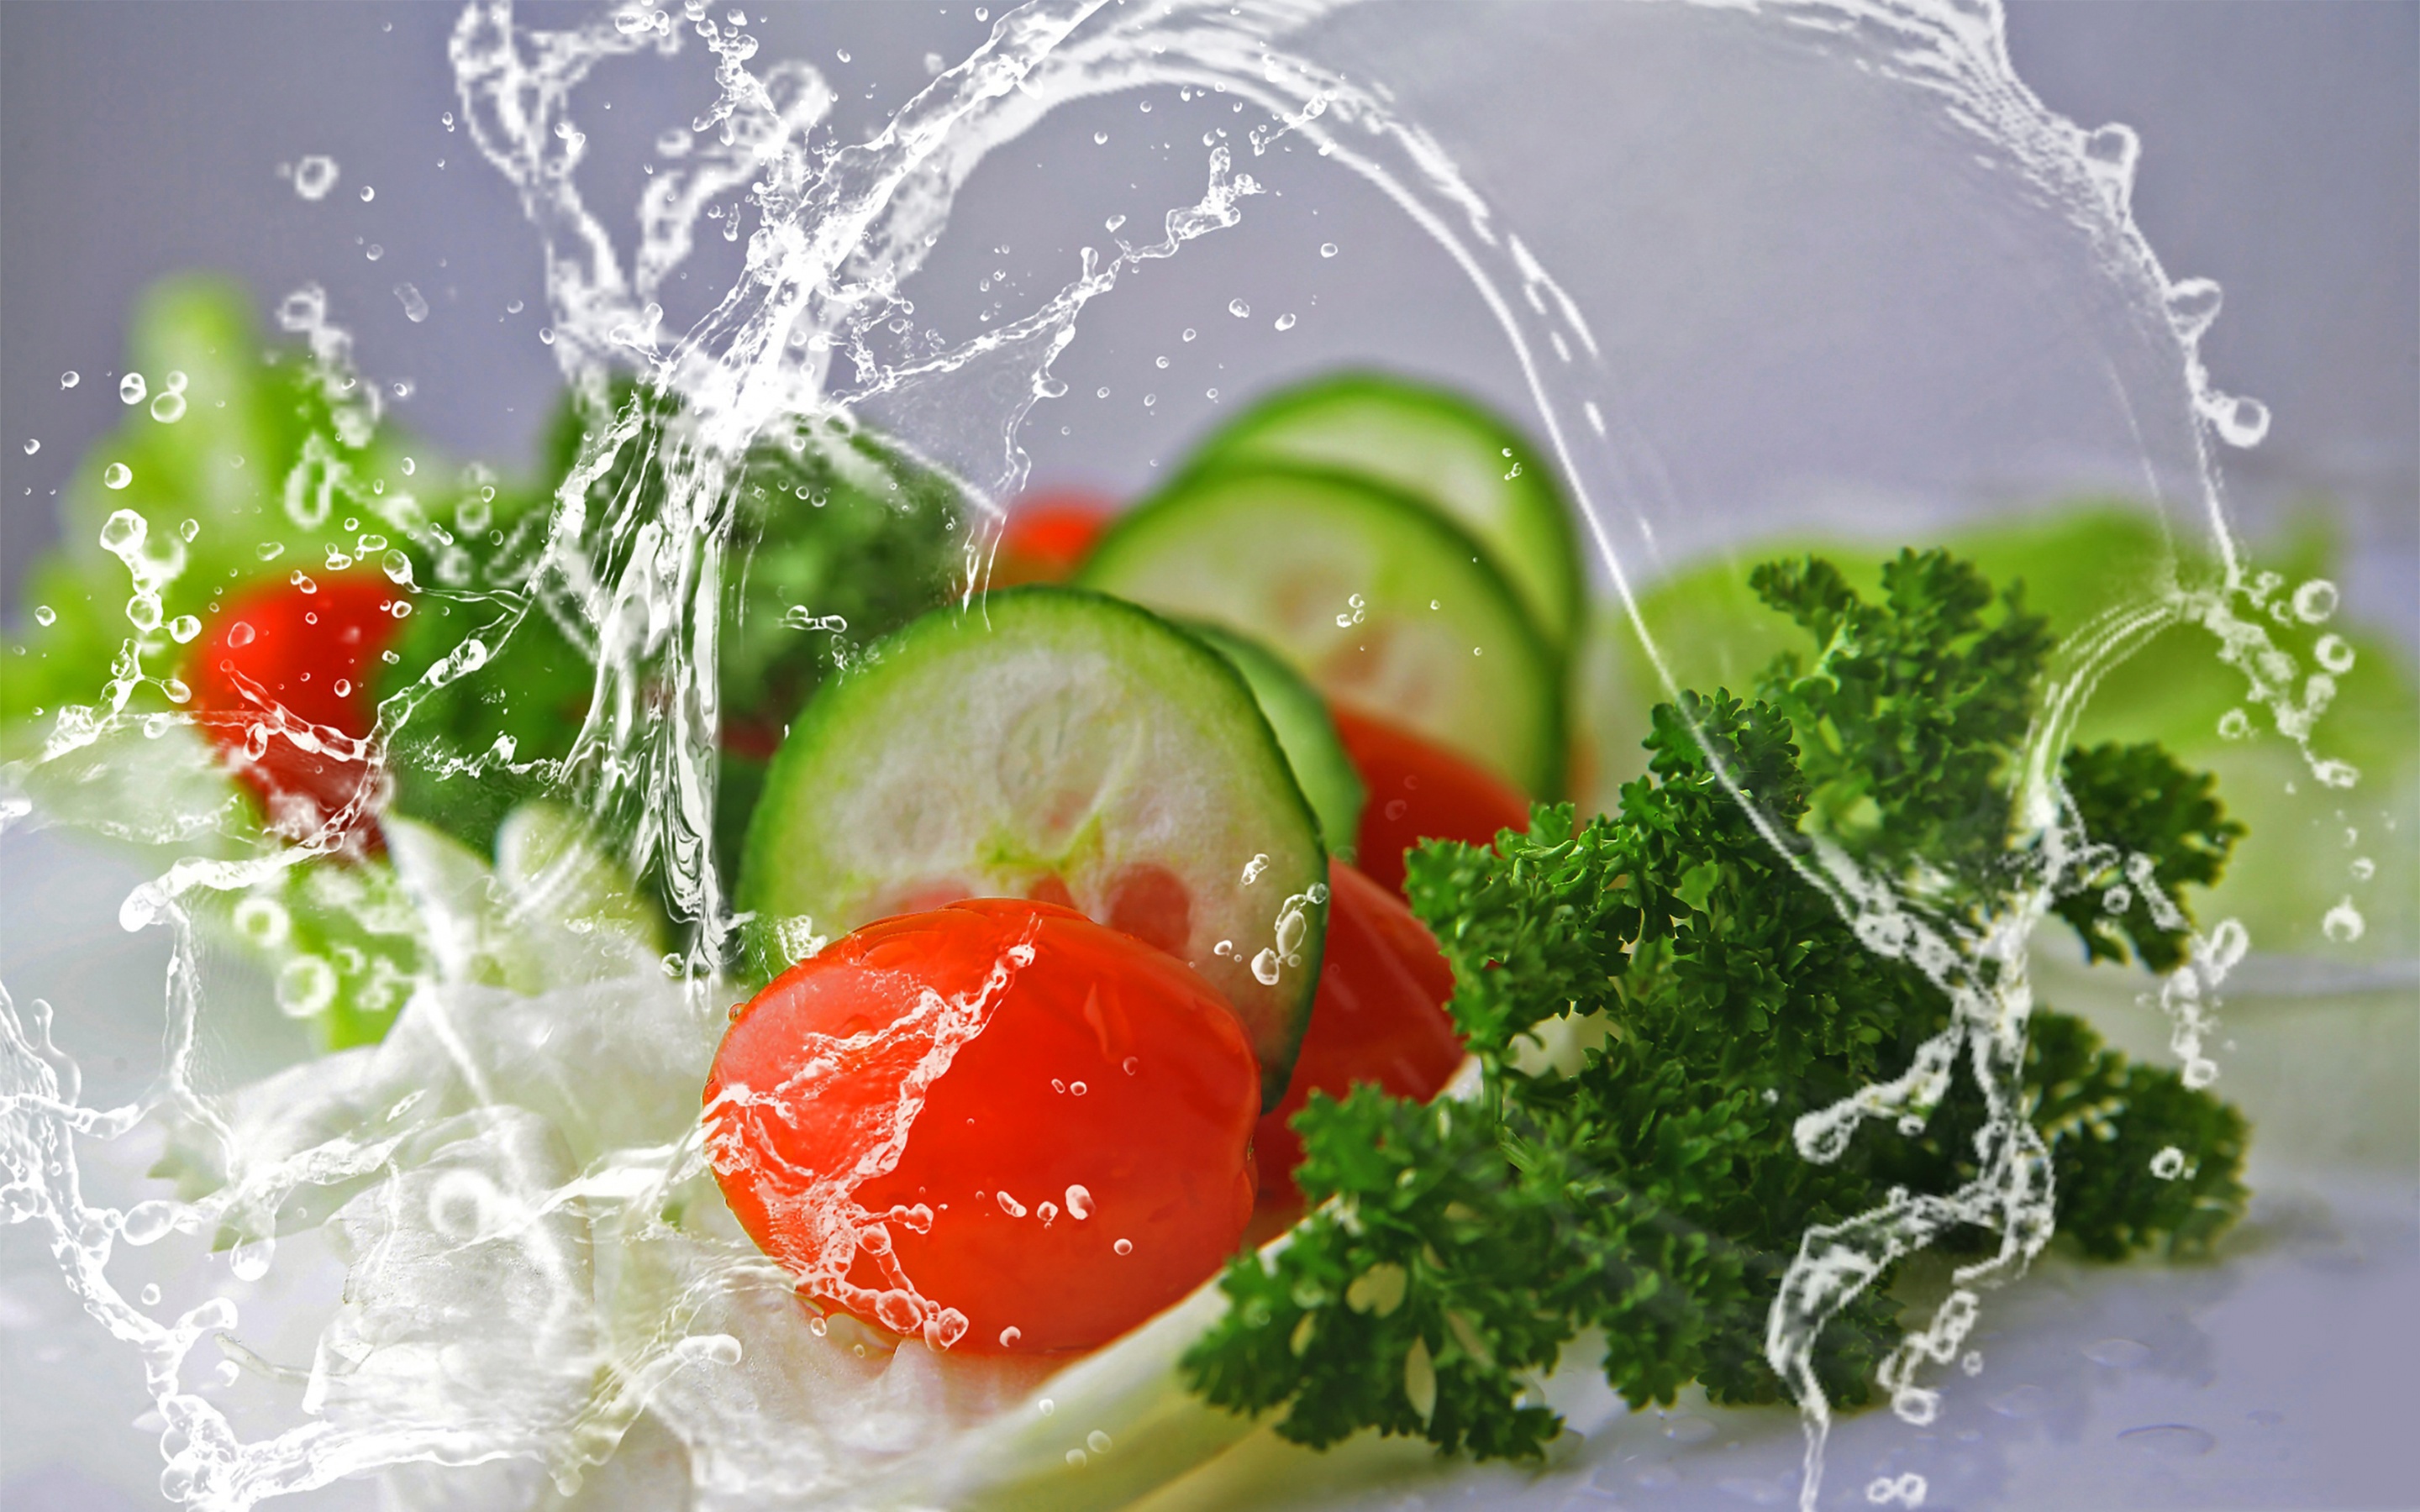 Свежести число. Свежесть продуктов. Фрукты и овощи в воде. Фрукты в воде. Свежие овощи и зелень.